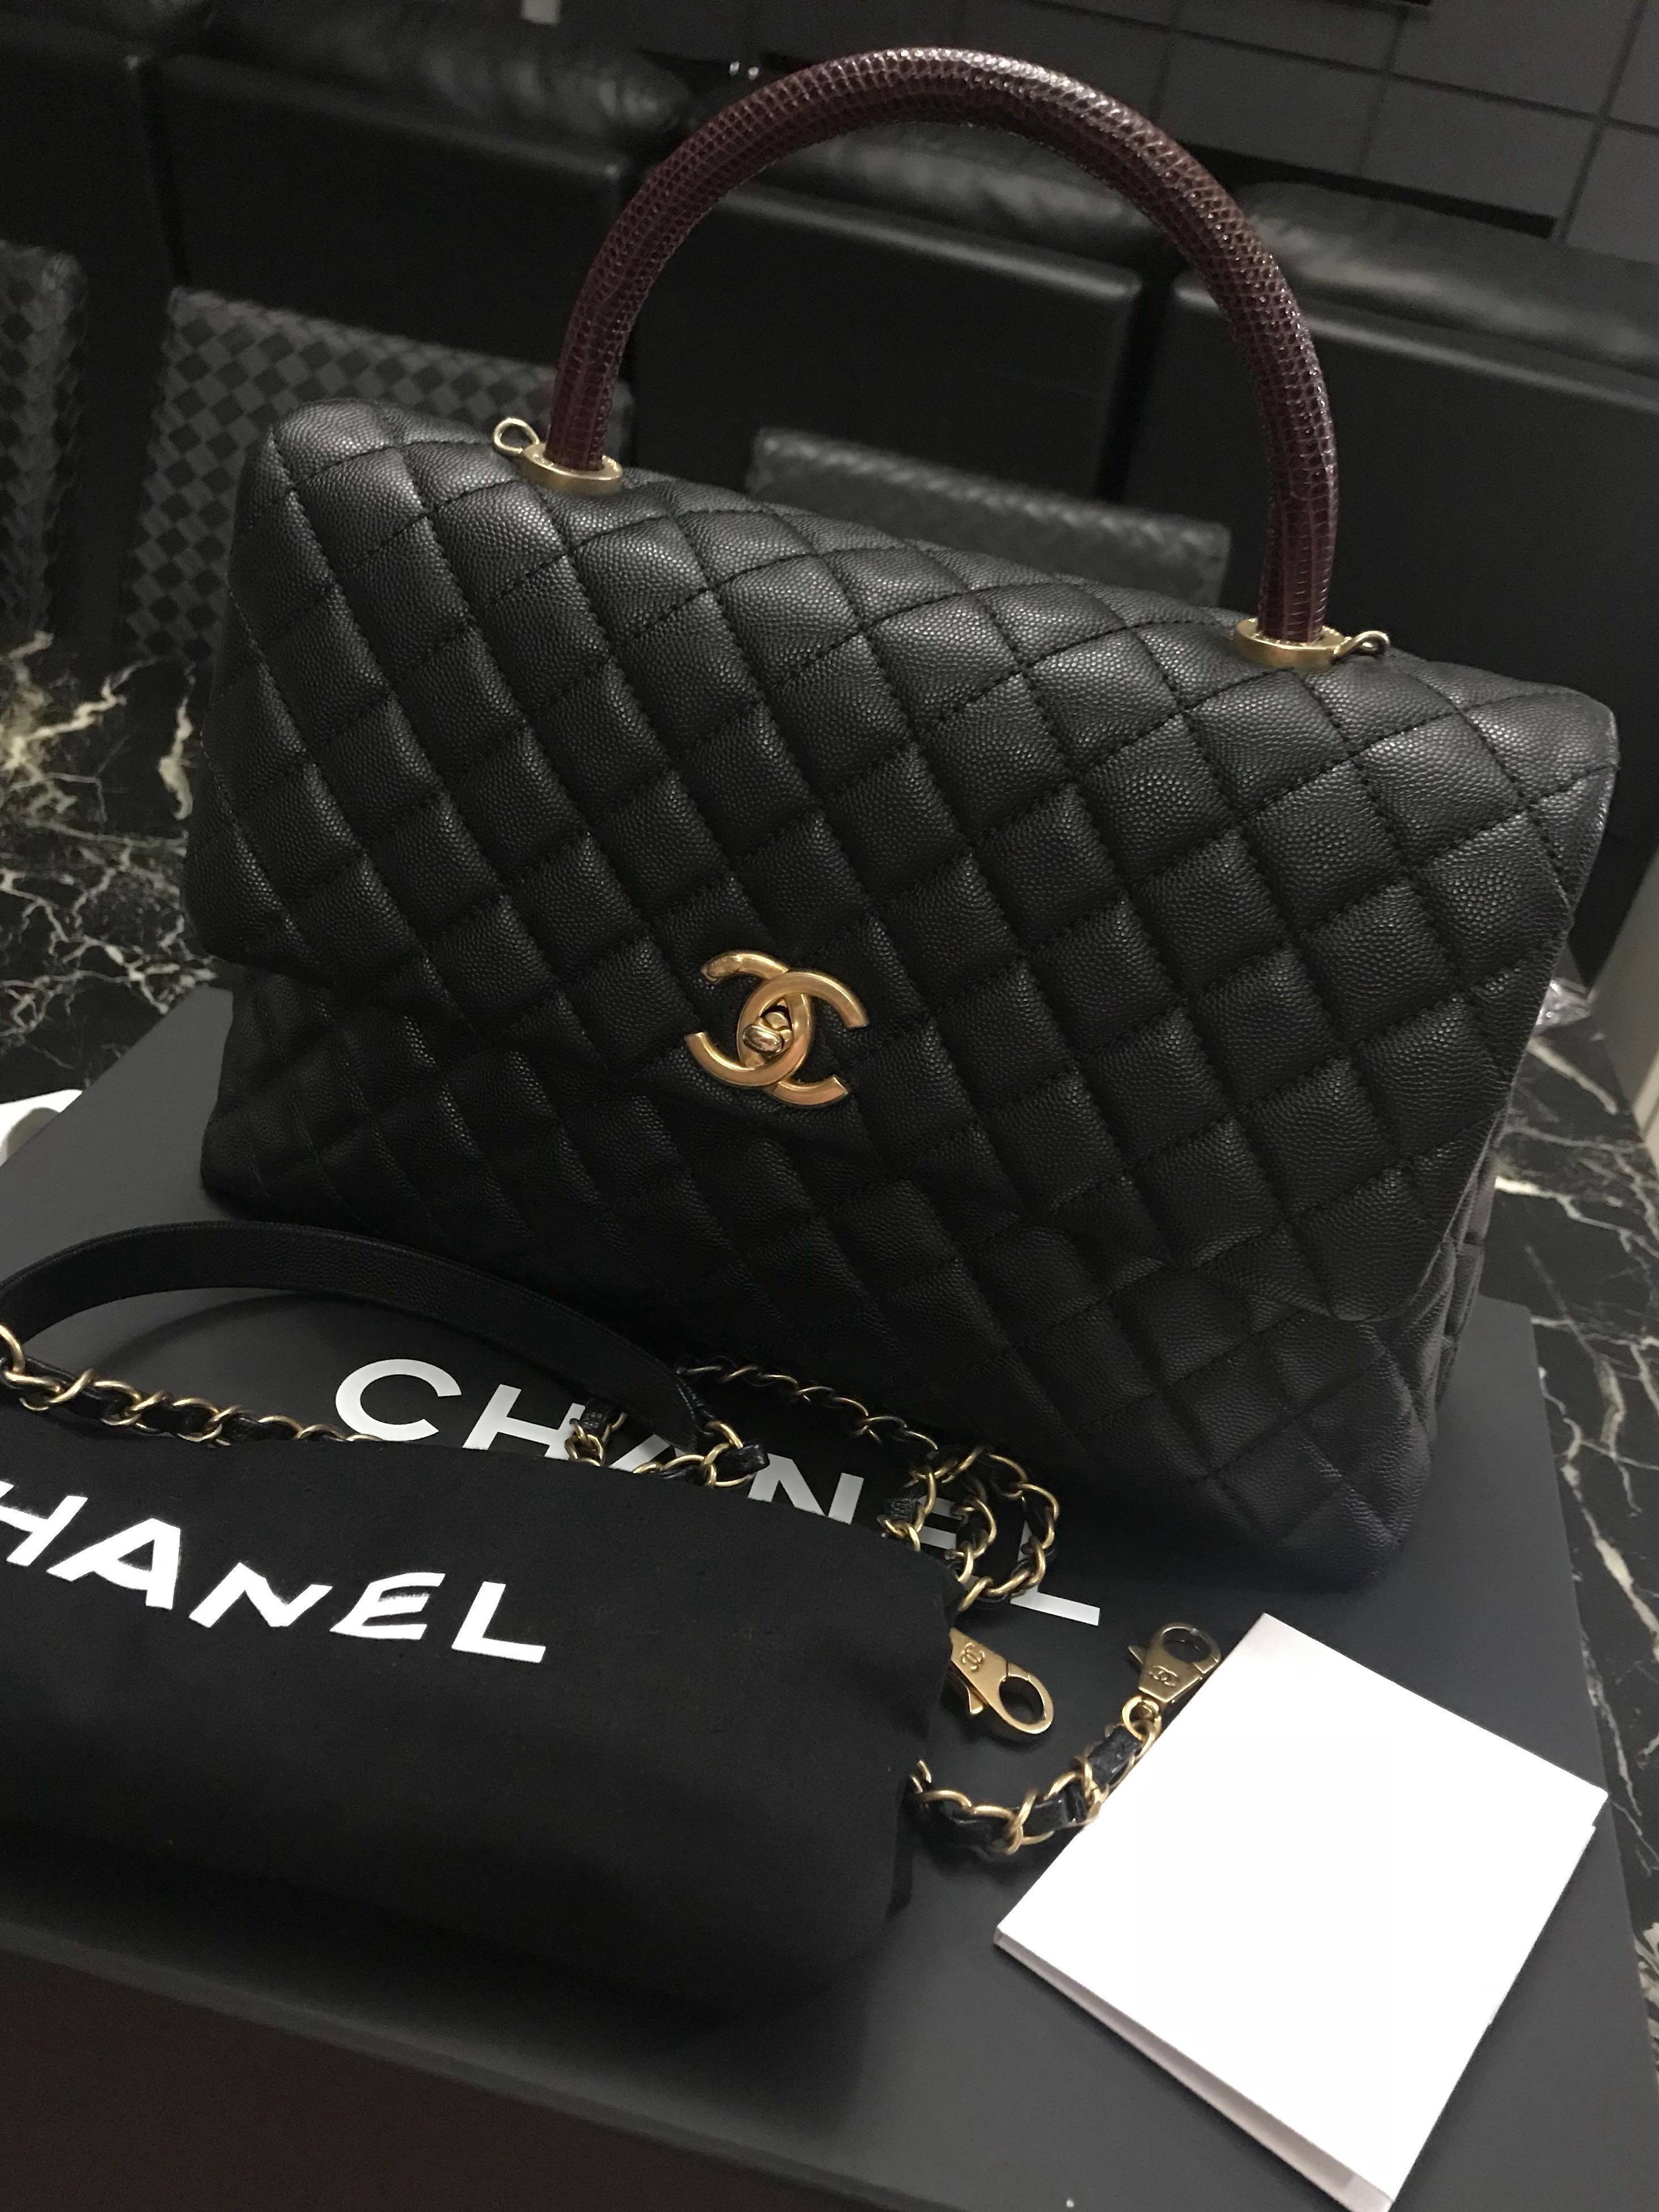 23 LNIB Chanel Coco Handle Medium Beige/Caramel Caviar